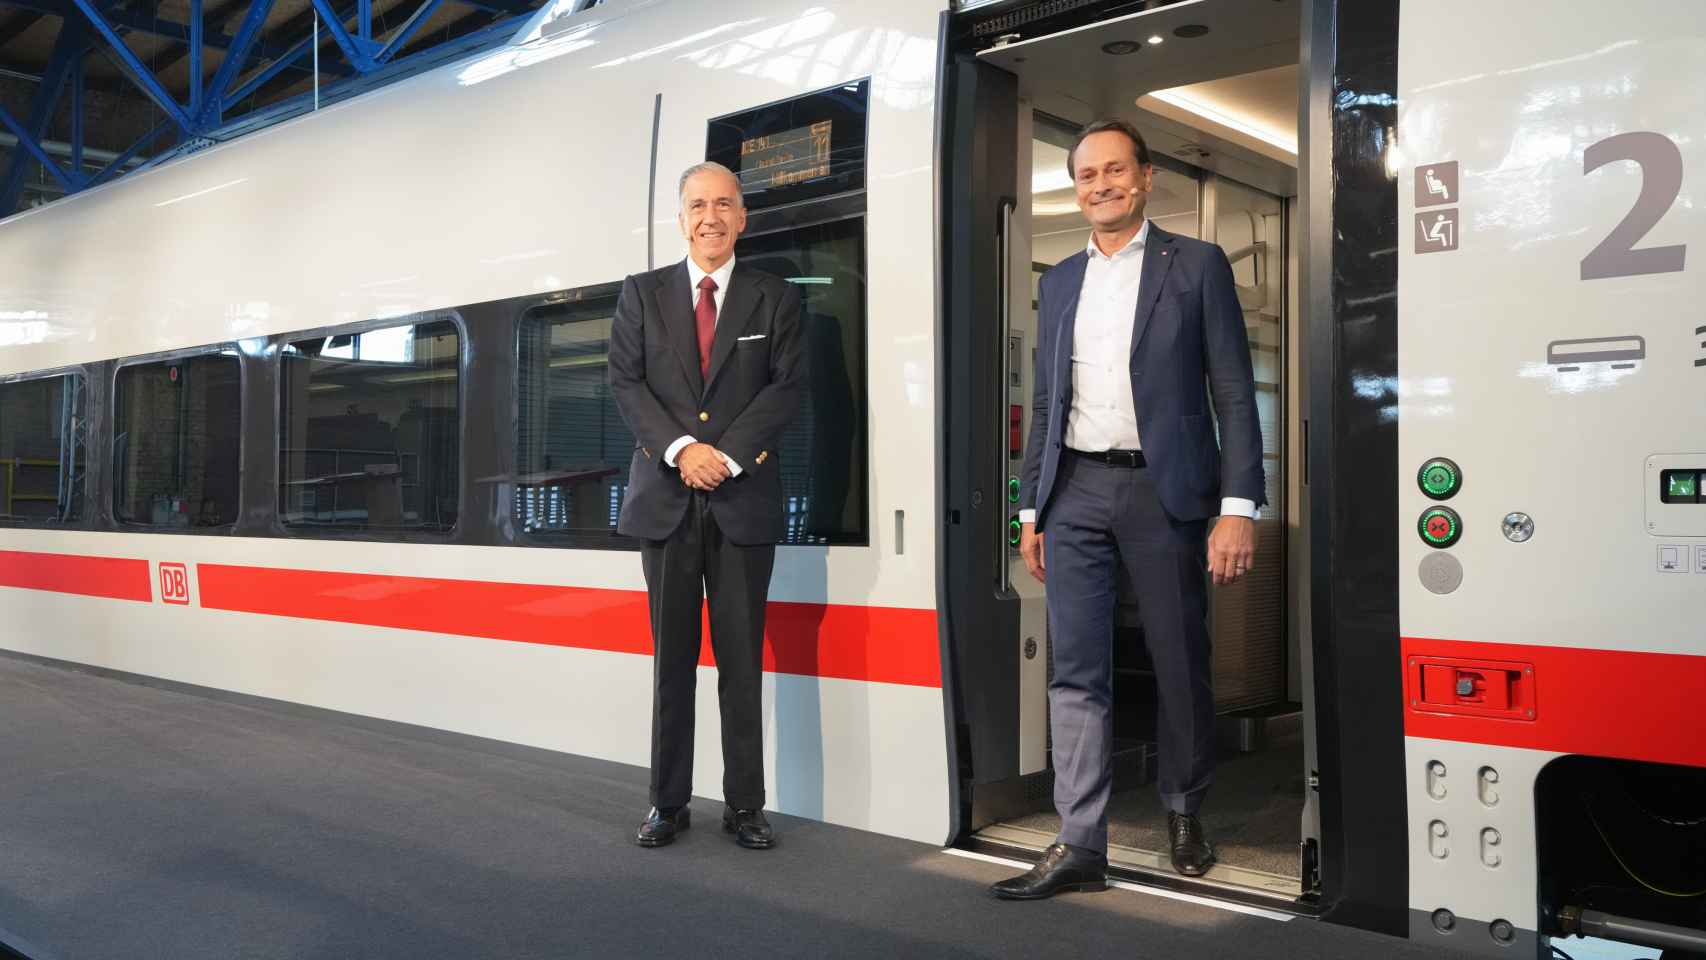 Gonzalo Urquijo Fernández de Araoz, CEO de Talgo, y Dr. Michael Peterson, CEO de Deutsche Bahn.